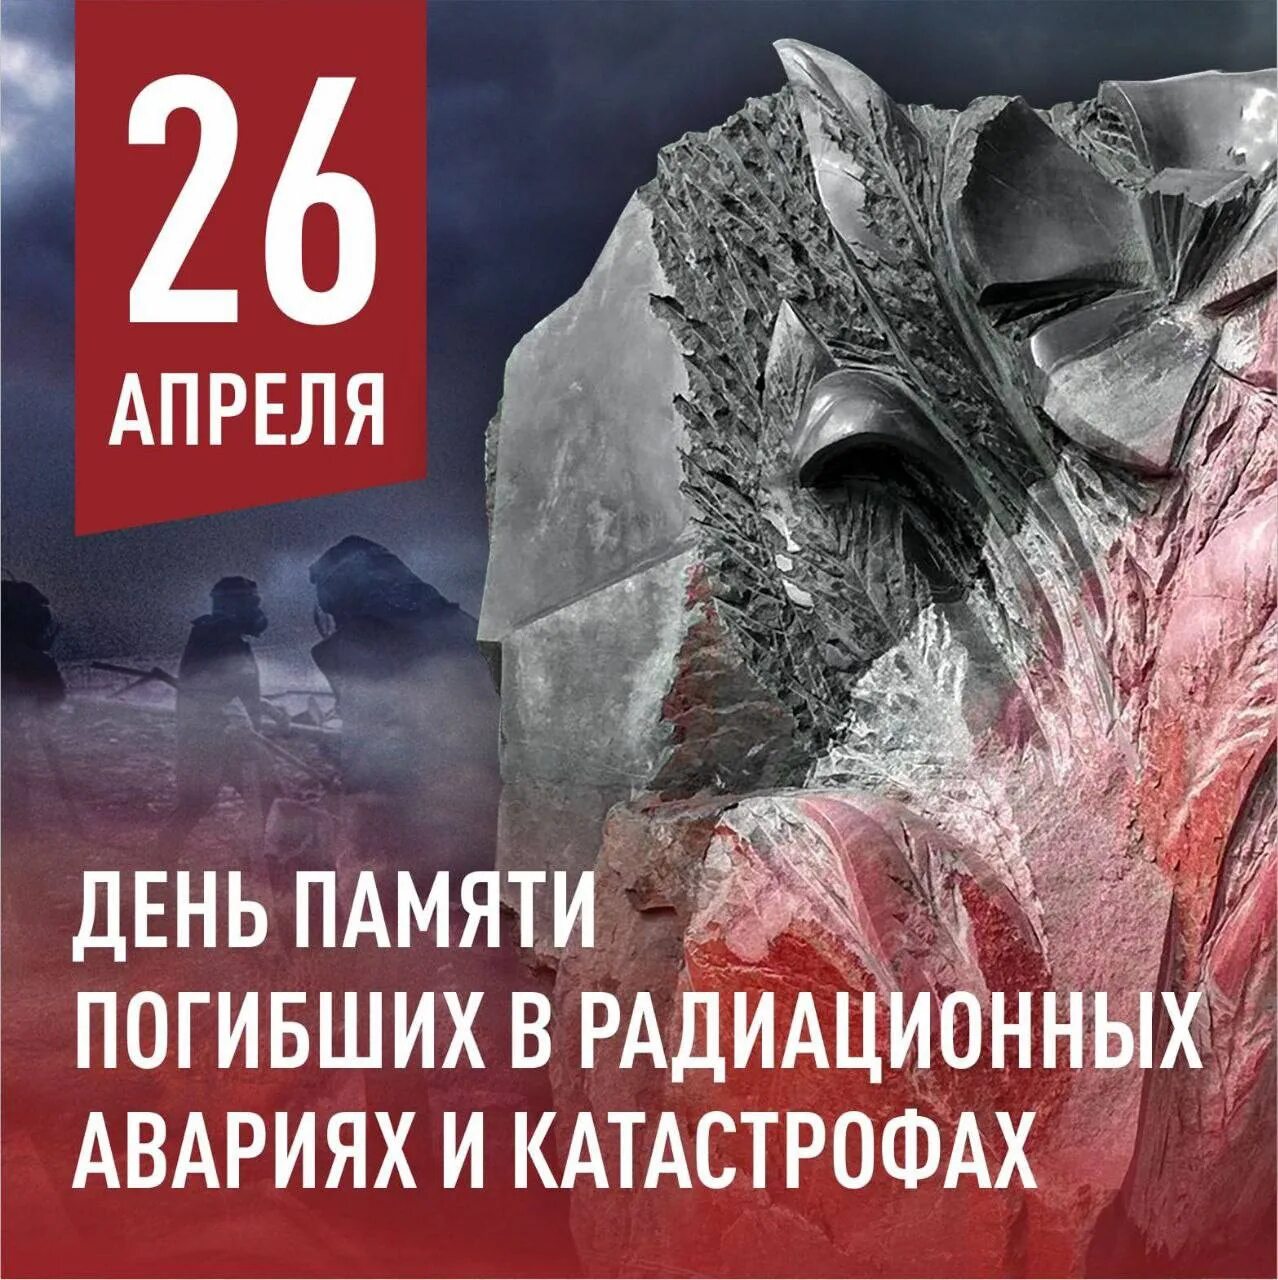 26 апреля день чернобыльской. 26 Апреля день памяти погибших в радиационных авариях и катастрофах. 26 Апреля день памяти. День памяти погибших в радиационных катастрофах. Чернобыль день памяти.